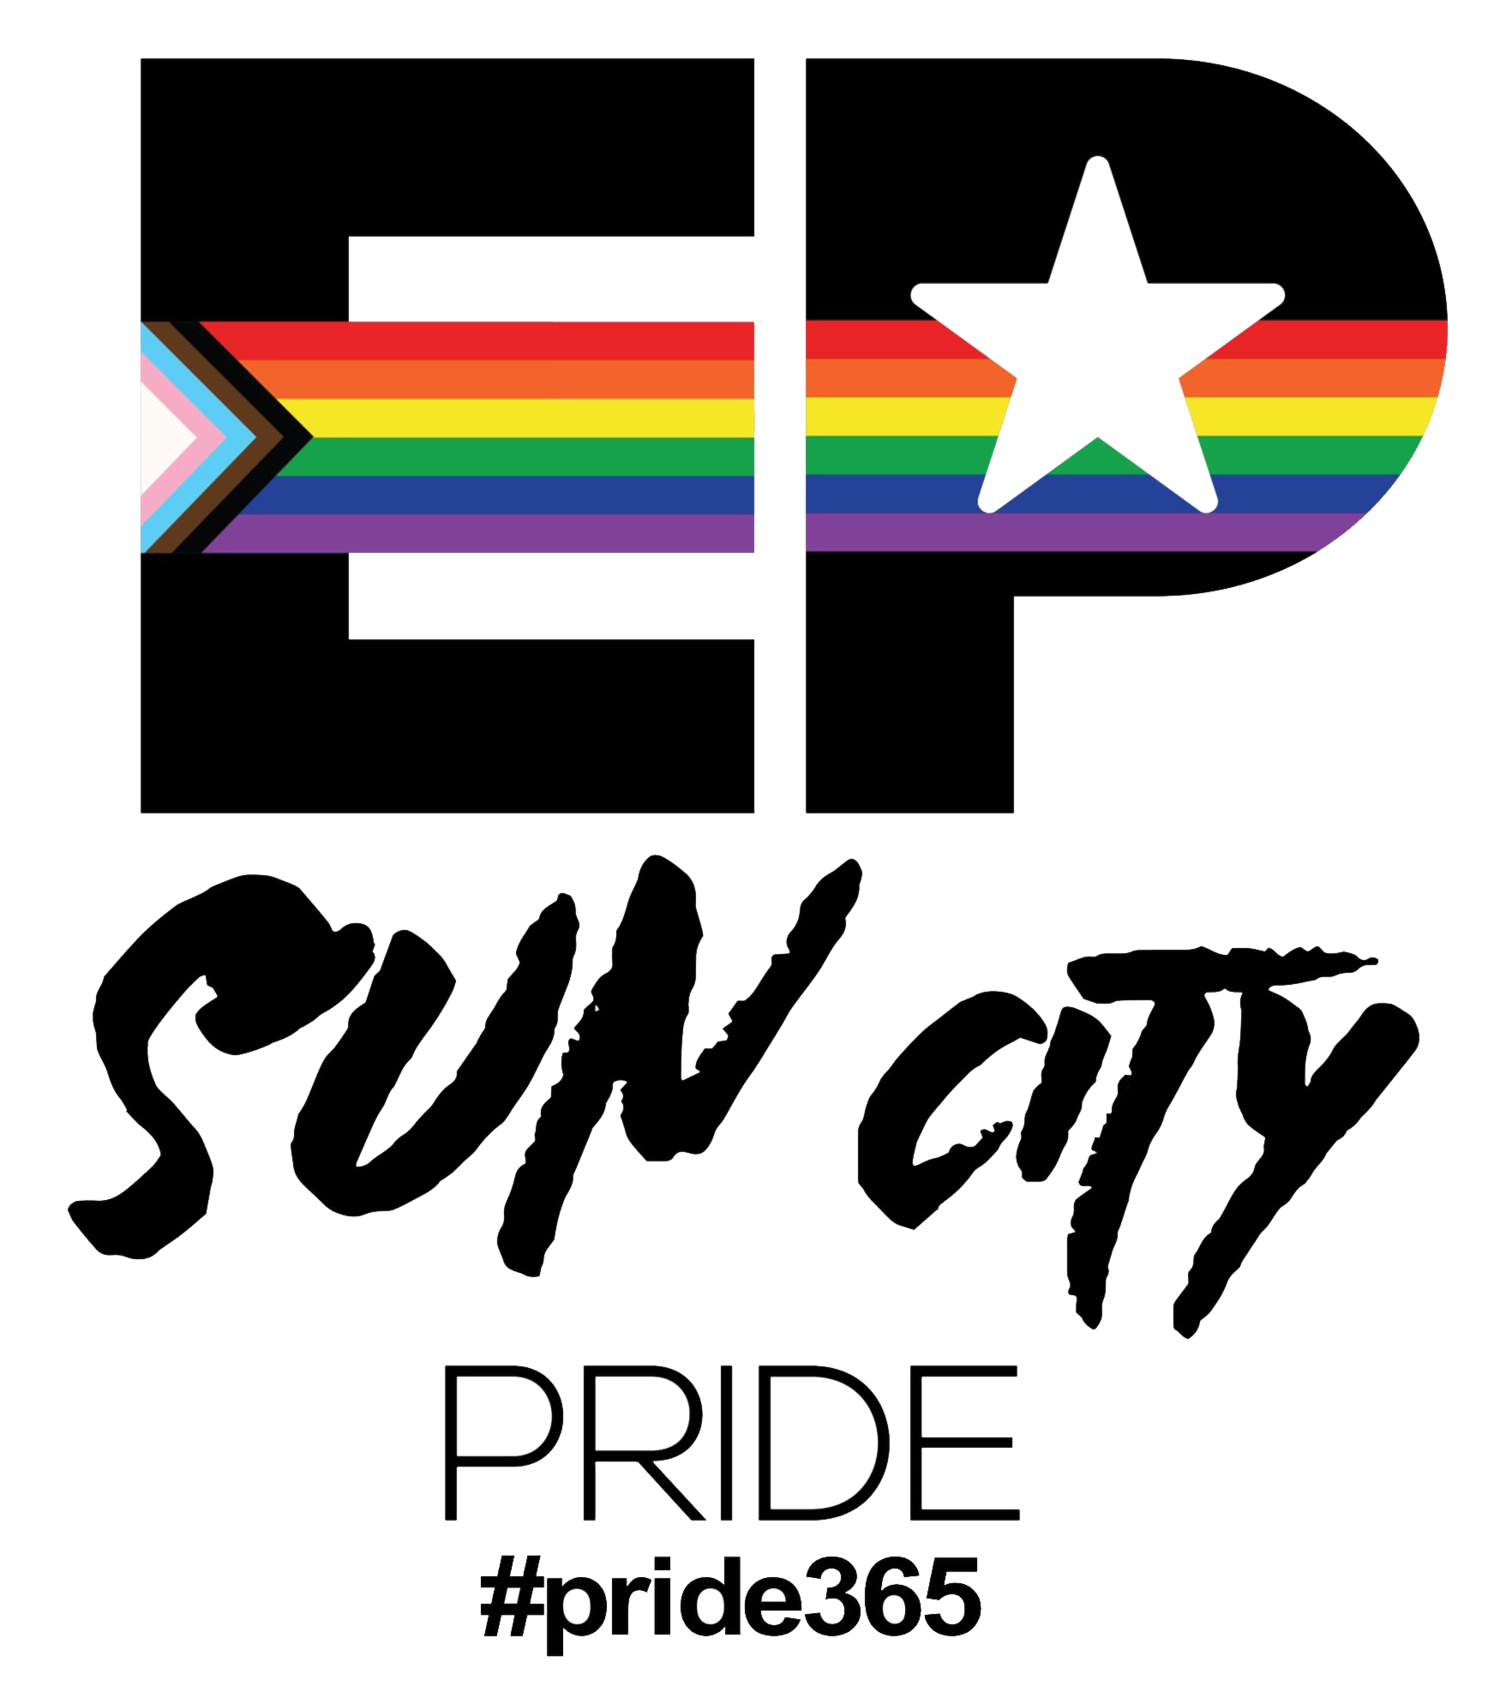 Sun City Pride